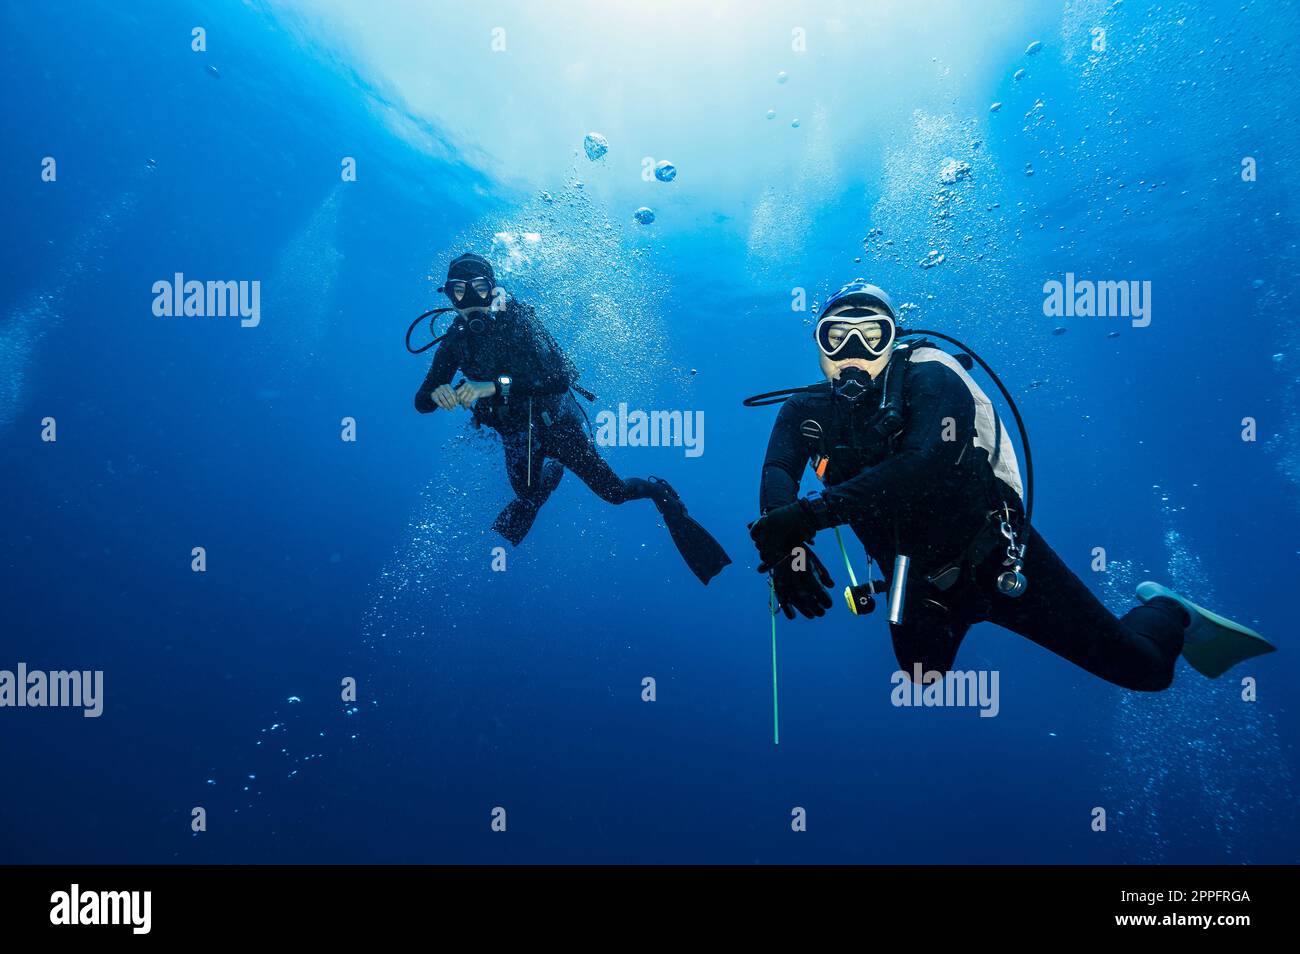 Taucherfreunde treiben im klaren Wasser des Golfs von Thailand Stockfoto